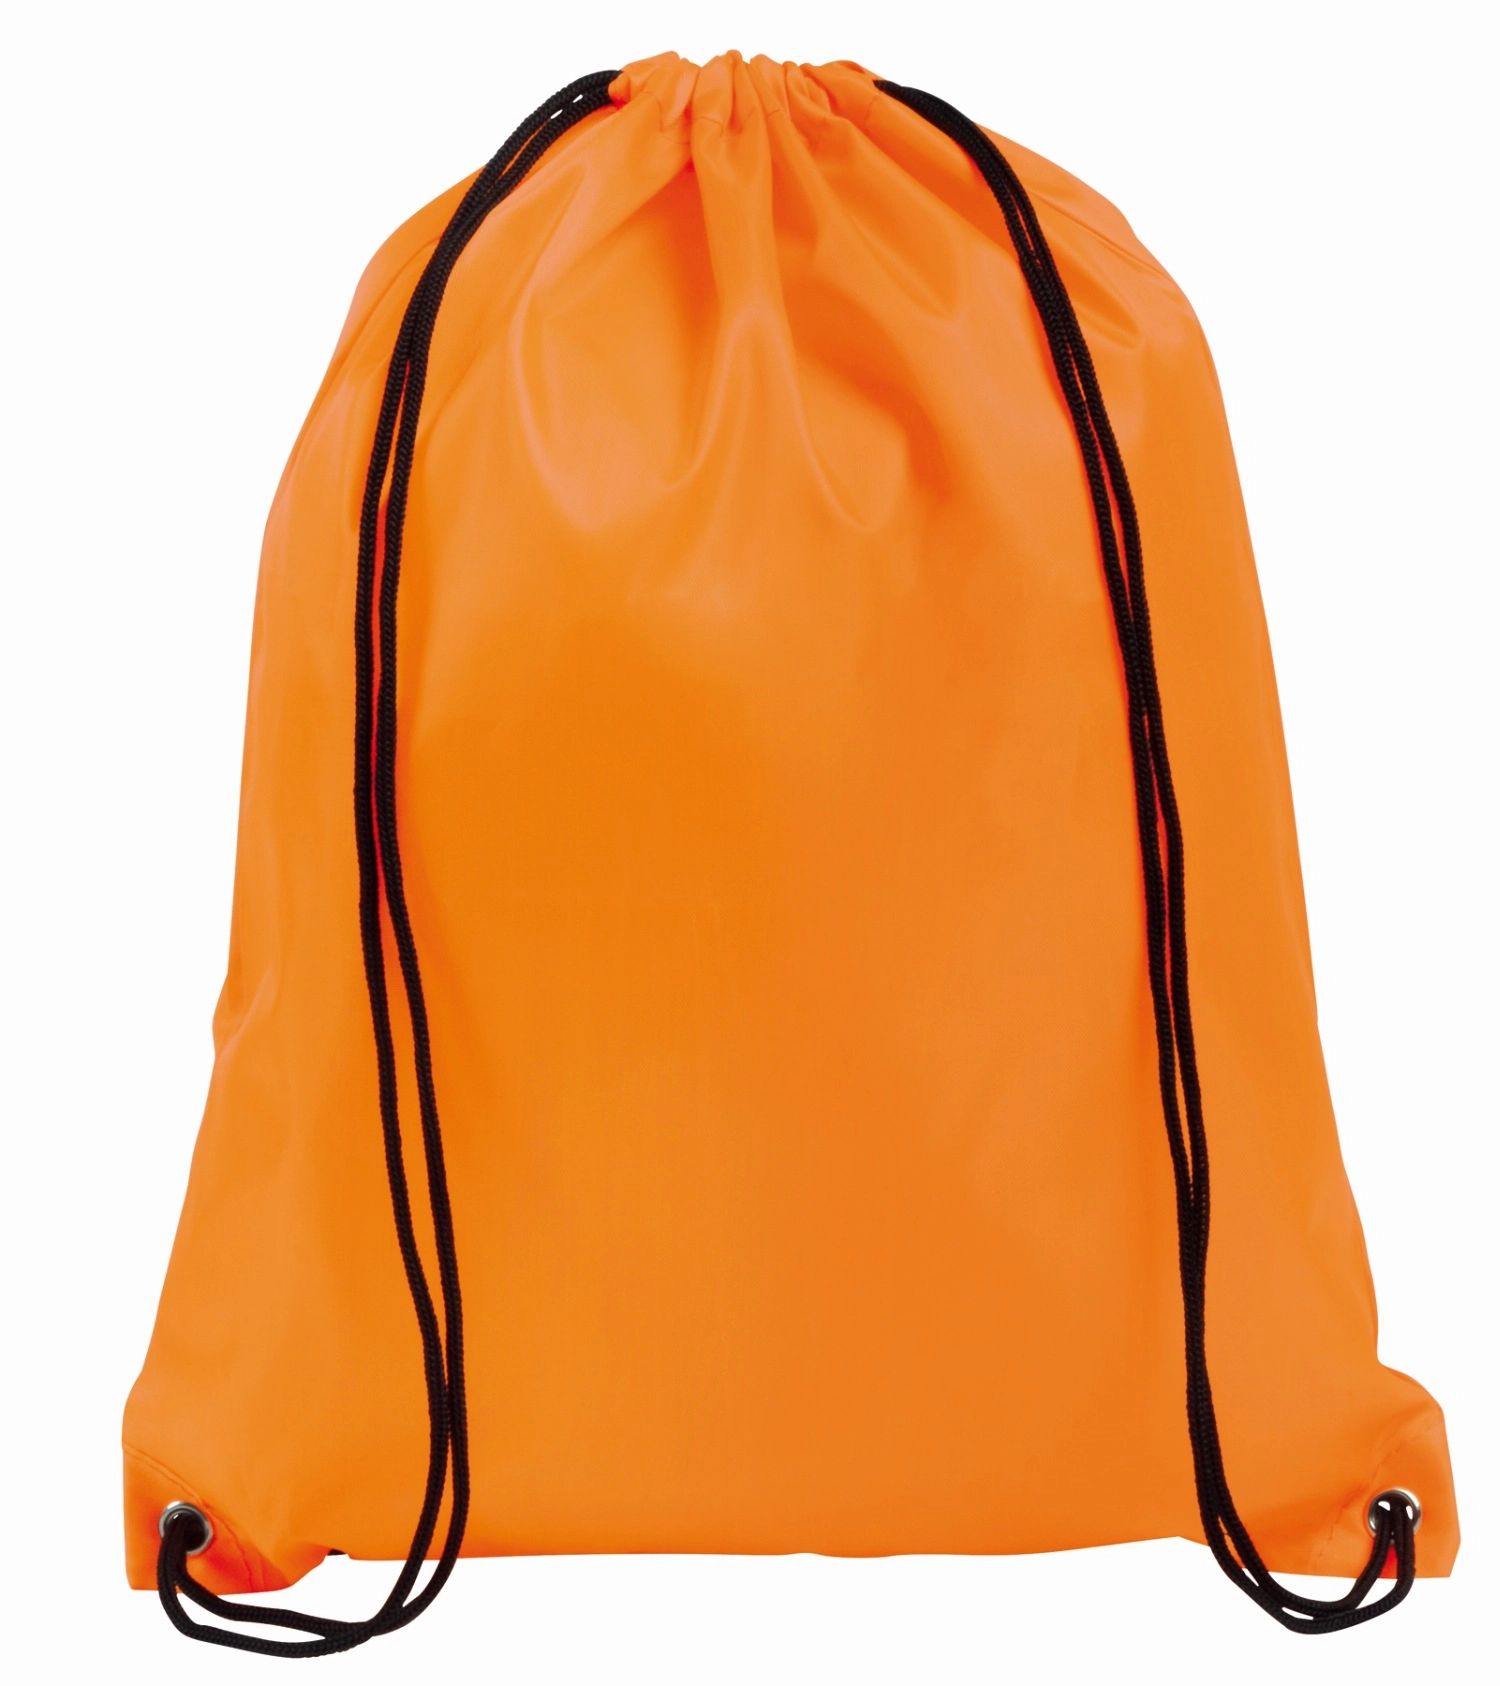 Plecak-worek na sznurek TOWN, pomarańczowy 56-0819544 pomarańczowy